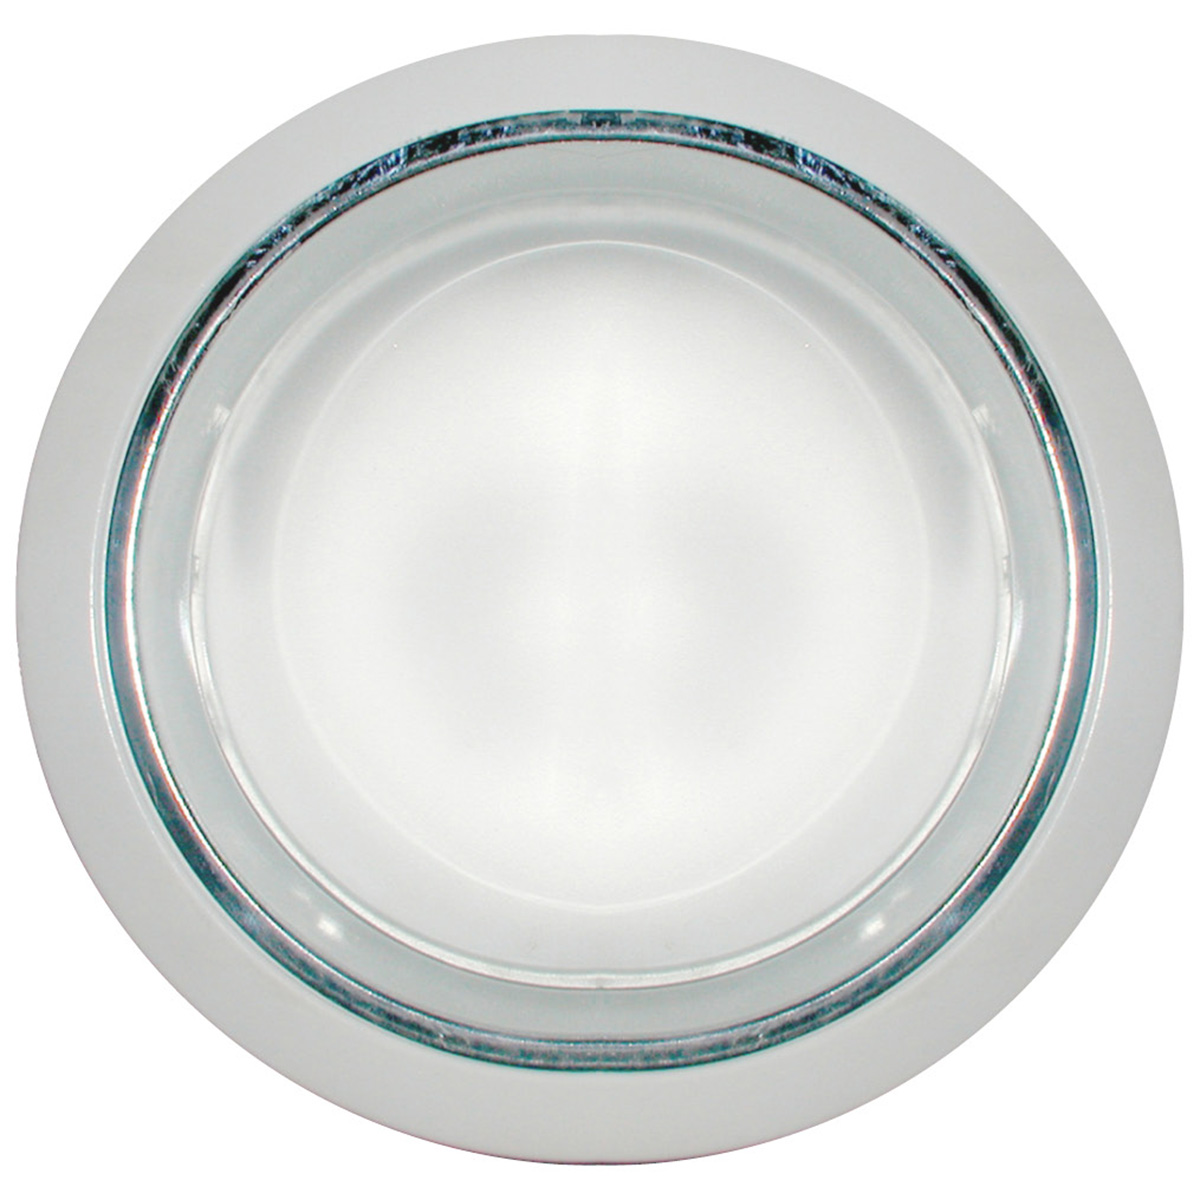 Refletor De Embutir 19cm Com Vidro Fosco E-27 2 Lamp. Max 60w Branco